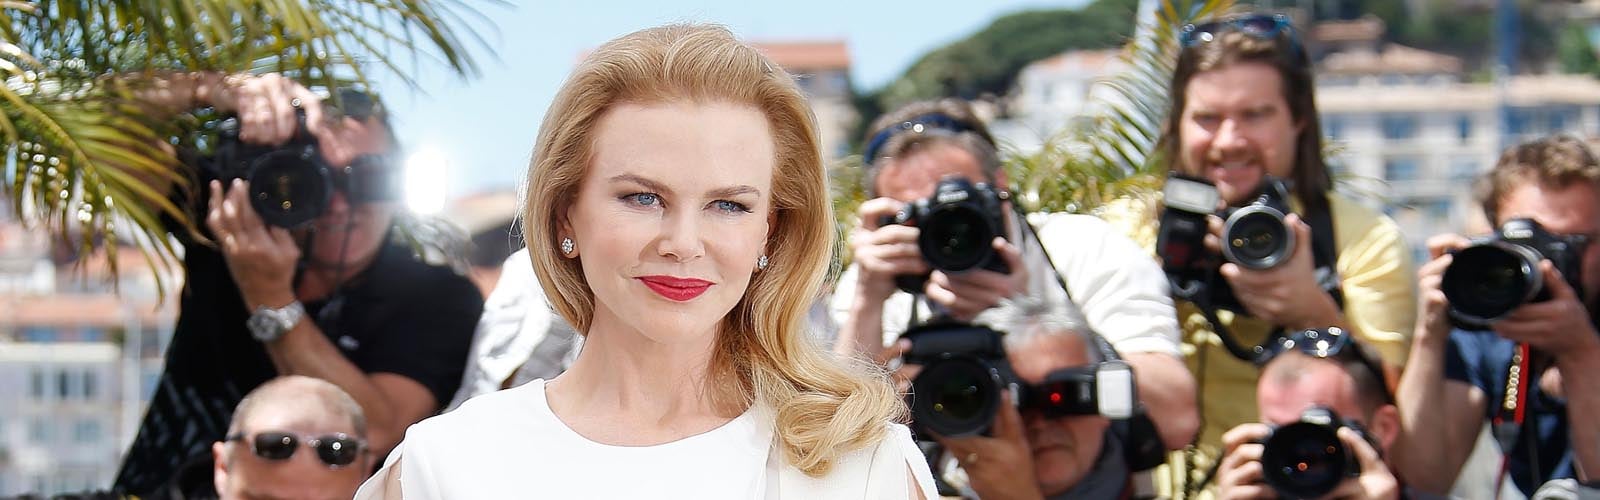 Nicole Kidman is the queen of Cannes